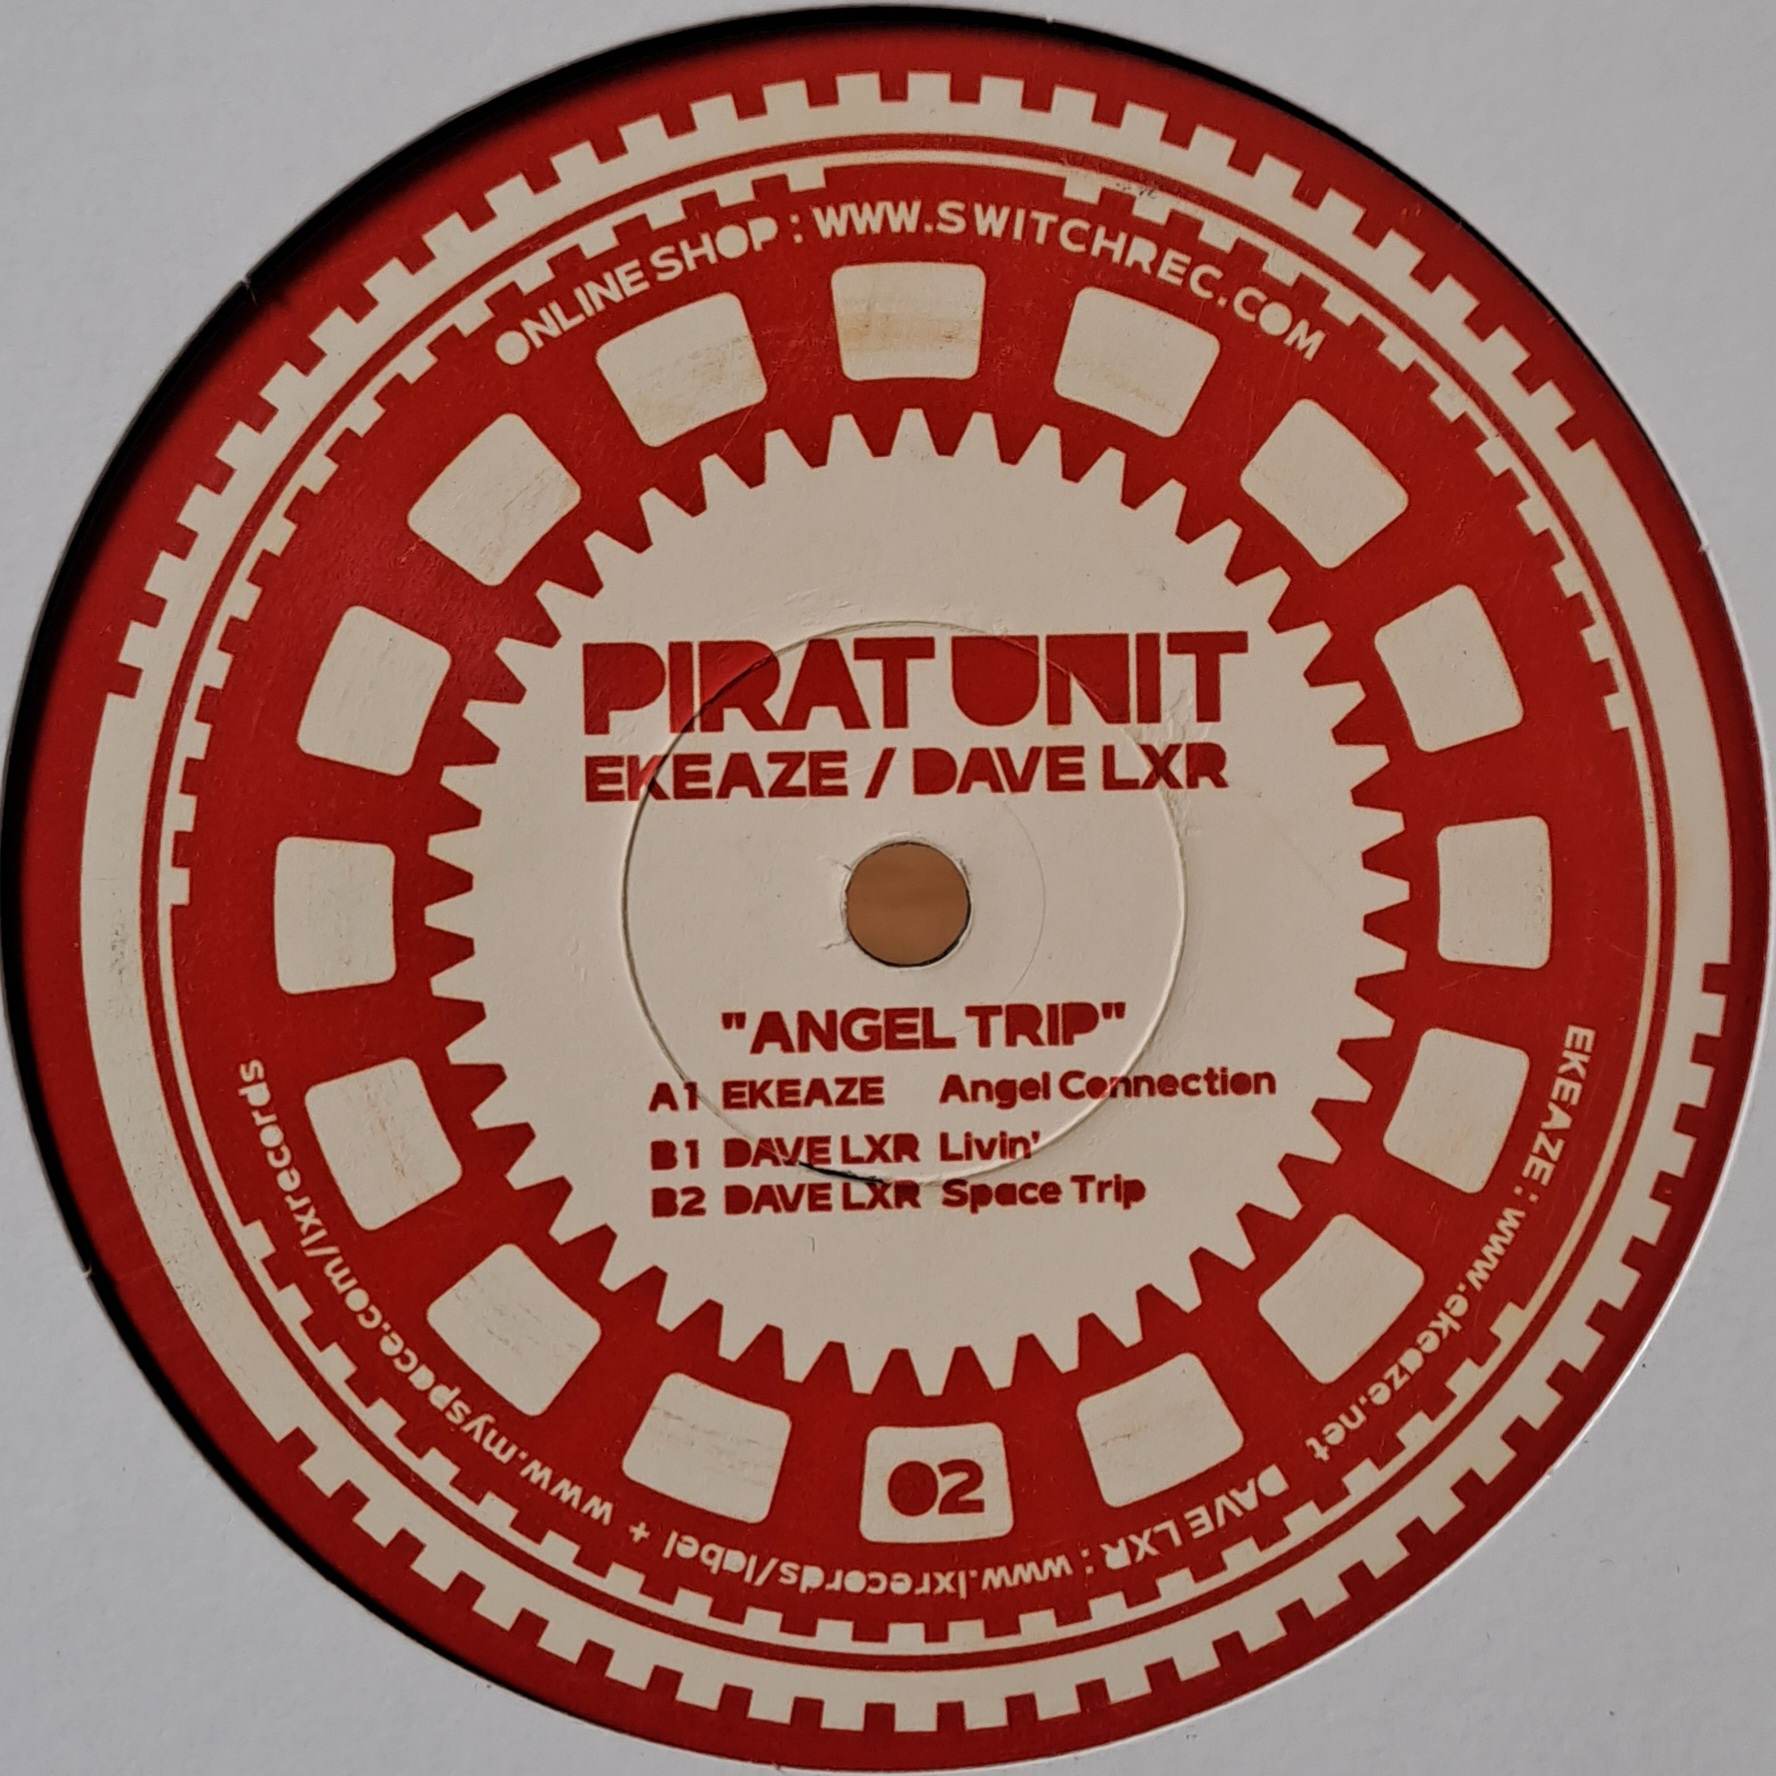 Pirat Unit 02 - vinyle freetekno